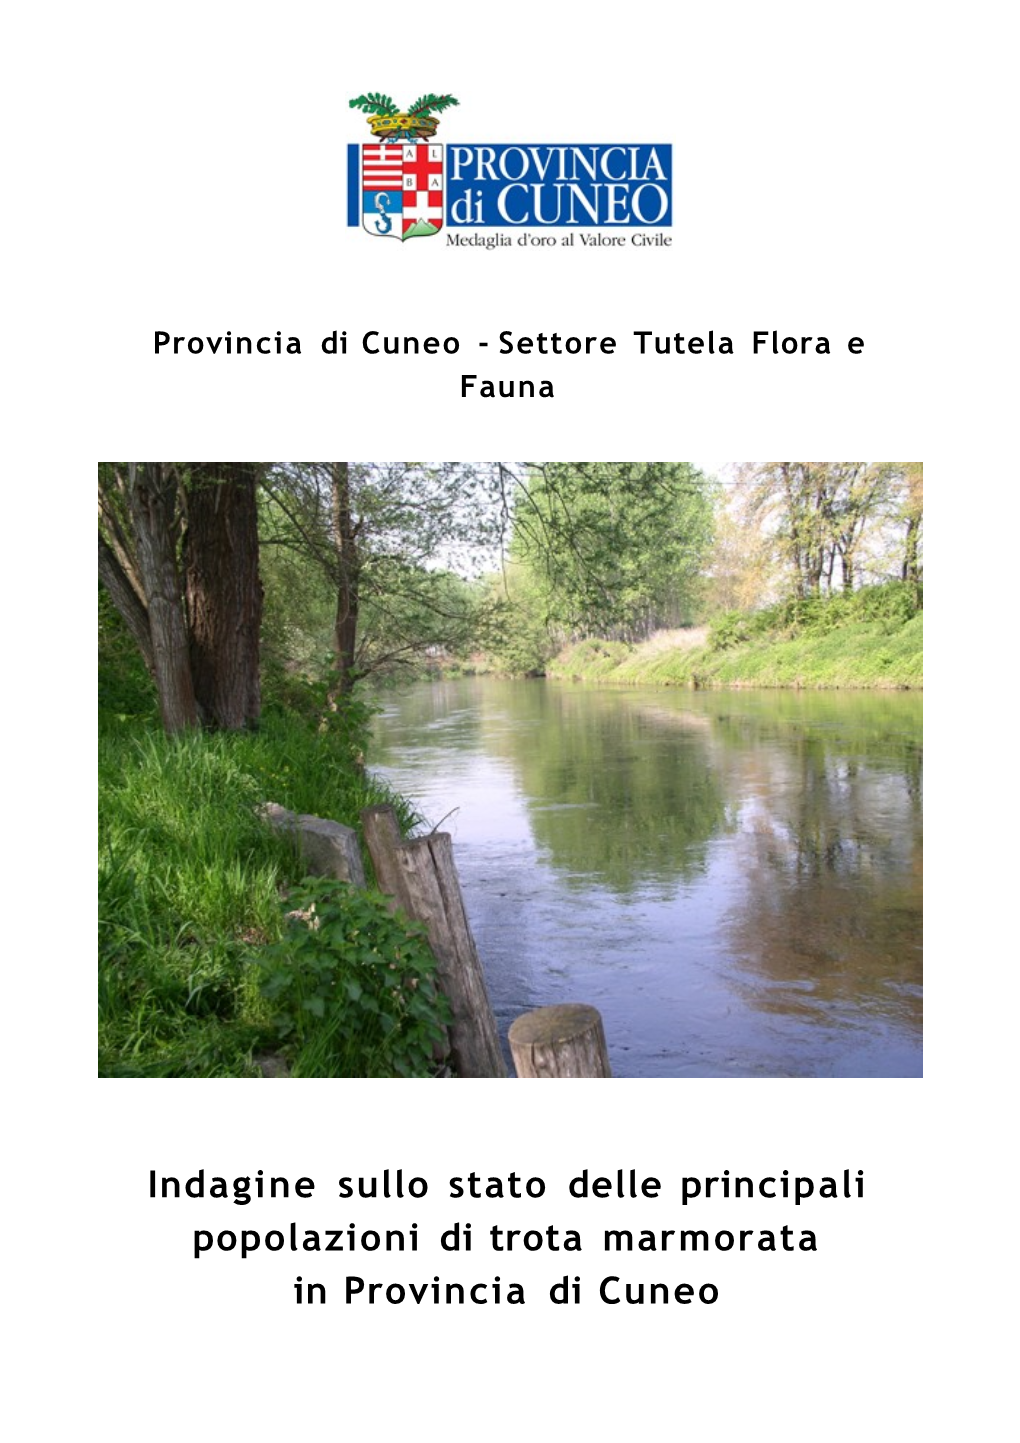 Indagine Sullo Stato Delle Principali Popolazioni Di Trota Marmorata in Provincia Di Cuneo